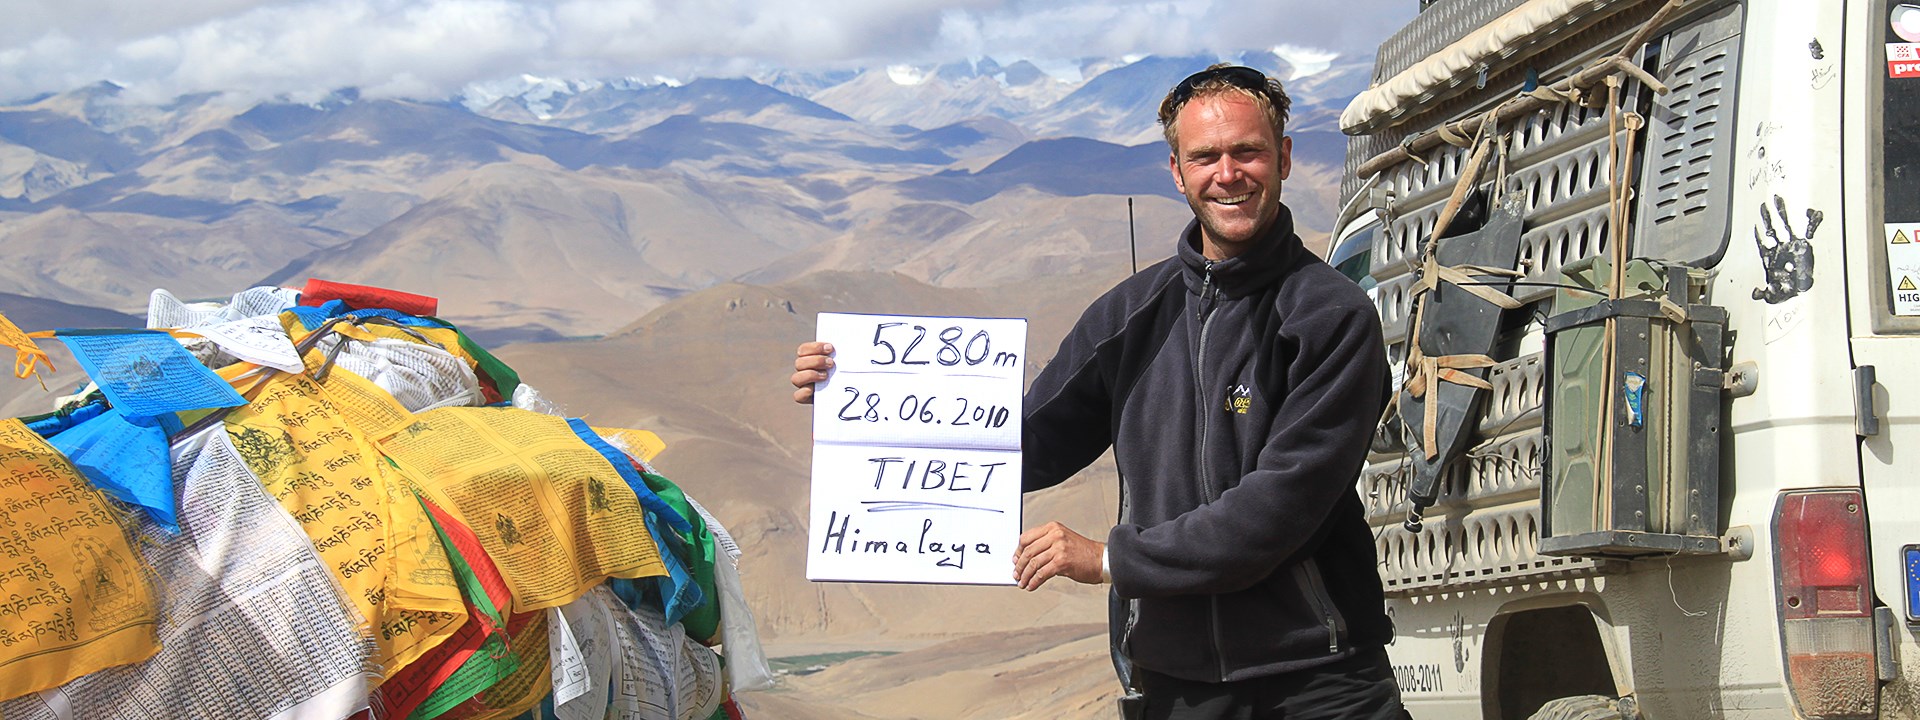 Recorrido de Autoconducción por el Tíbet con su Propio Vehículo